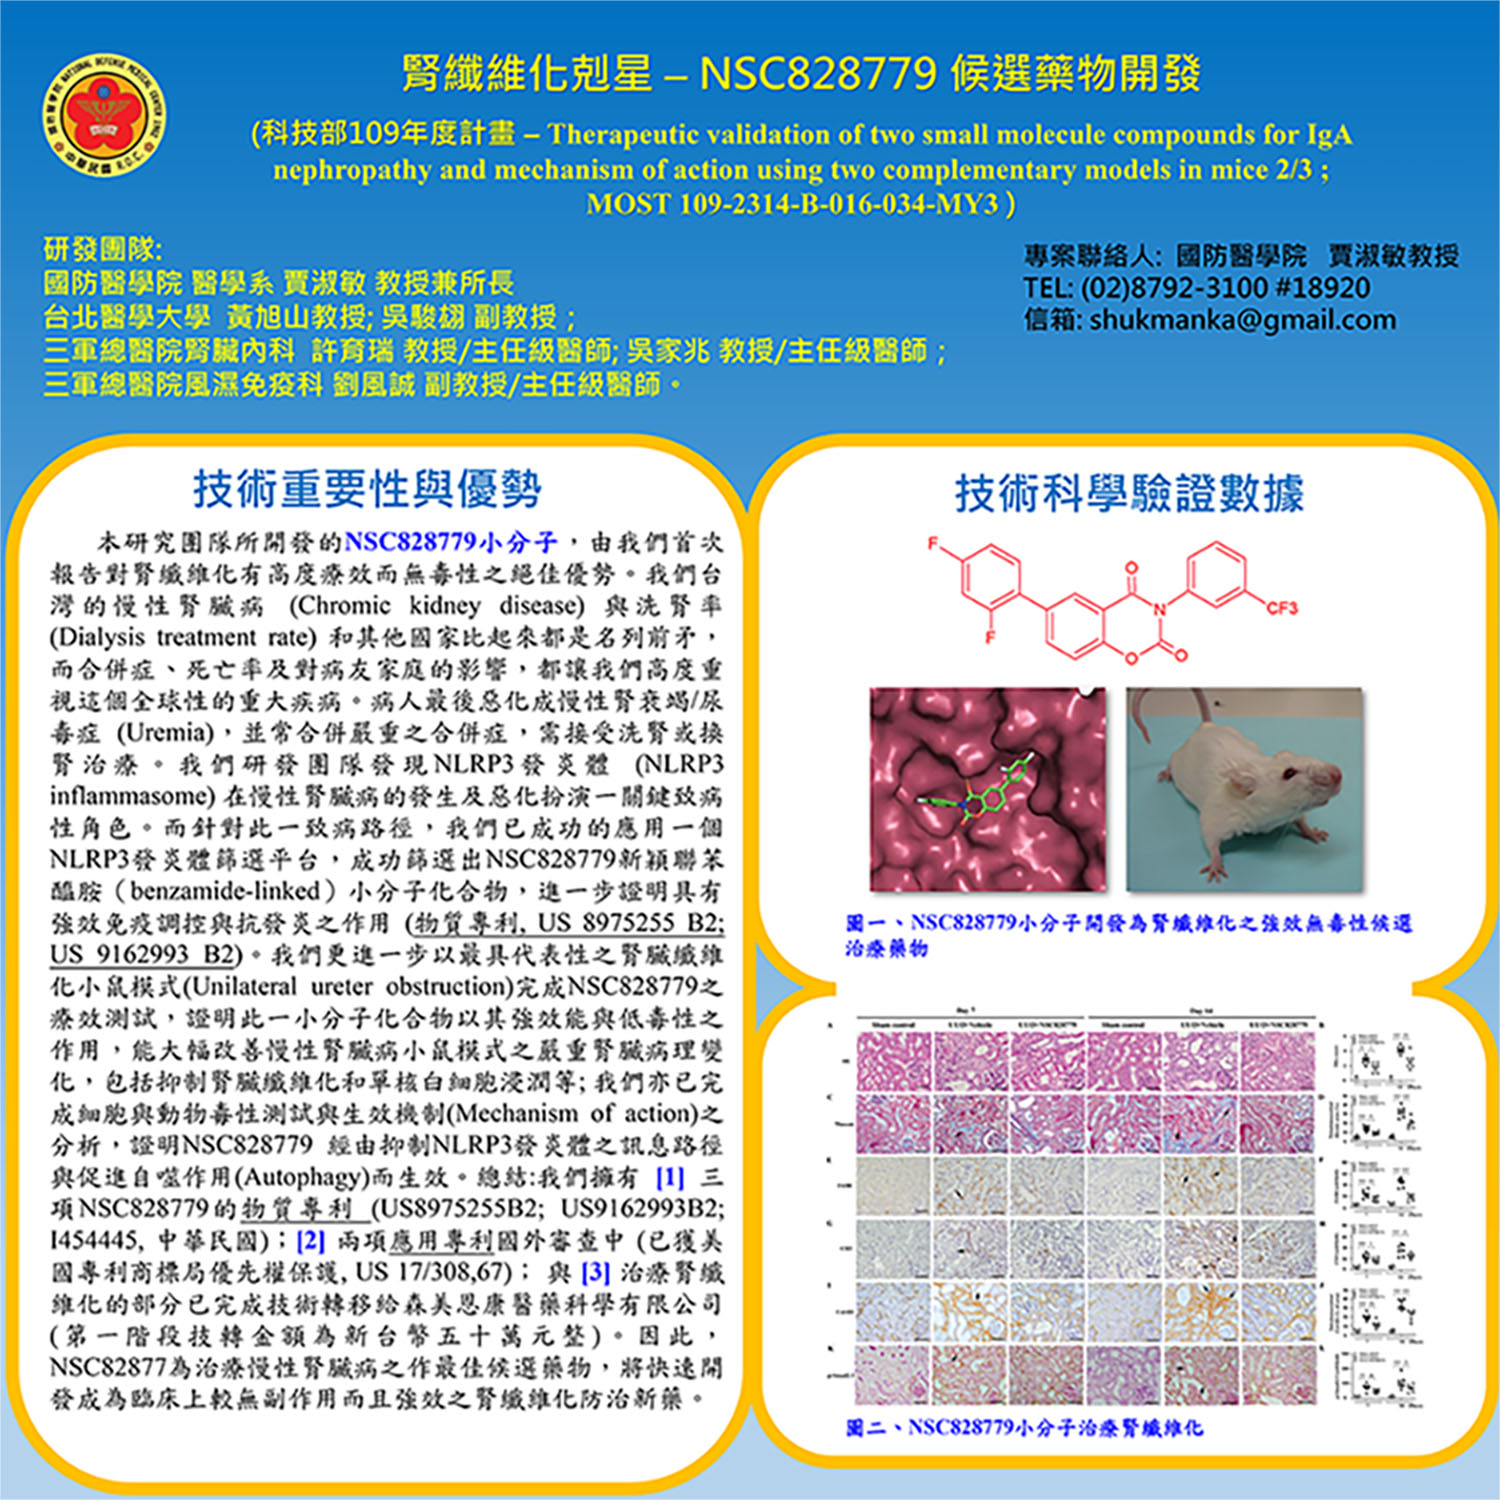 腎纖維化剋星 - NSC828779 候選藥物開發